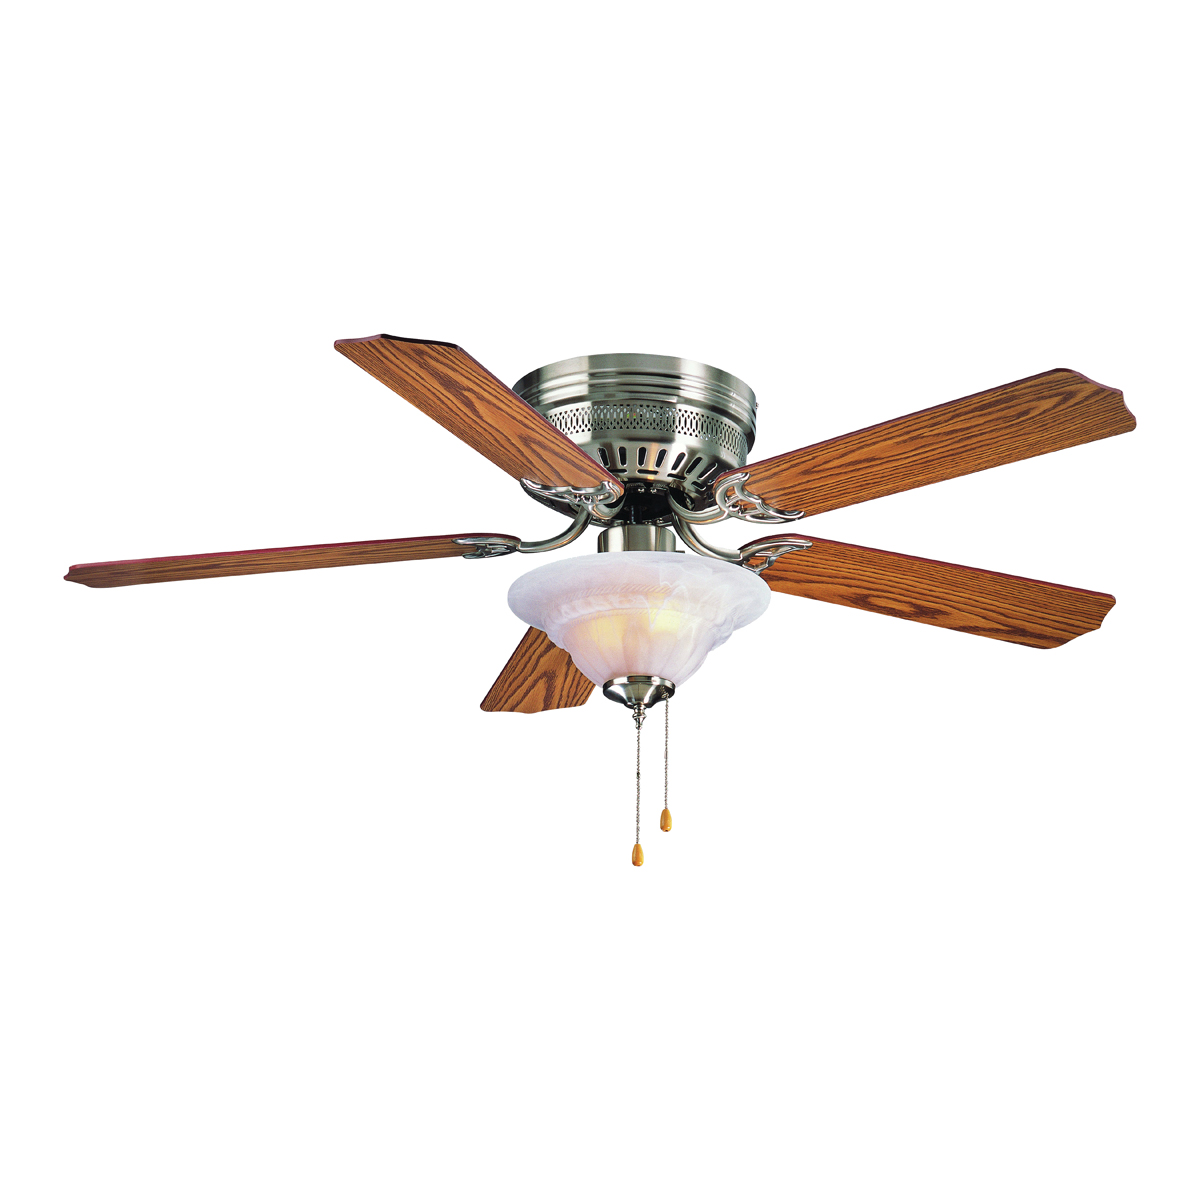 Ceiling Fan, 5-Blade, Oak/Walnut Blade, 52 in Sweep, MDF Blade, 3-Speed